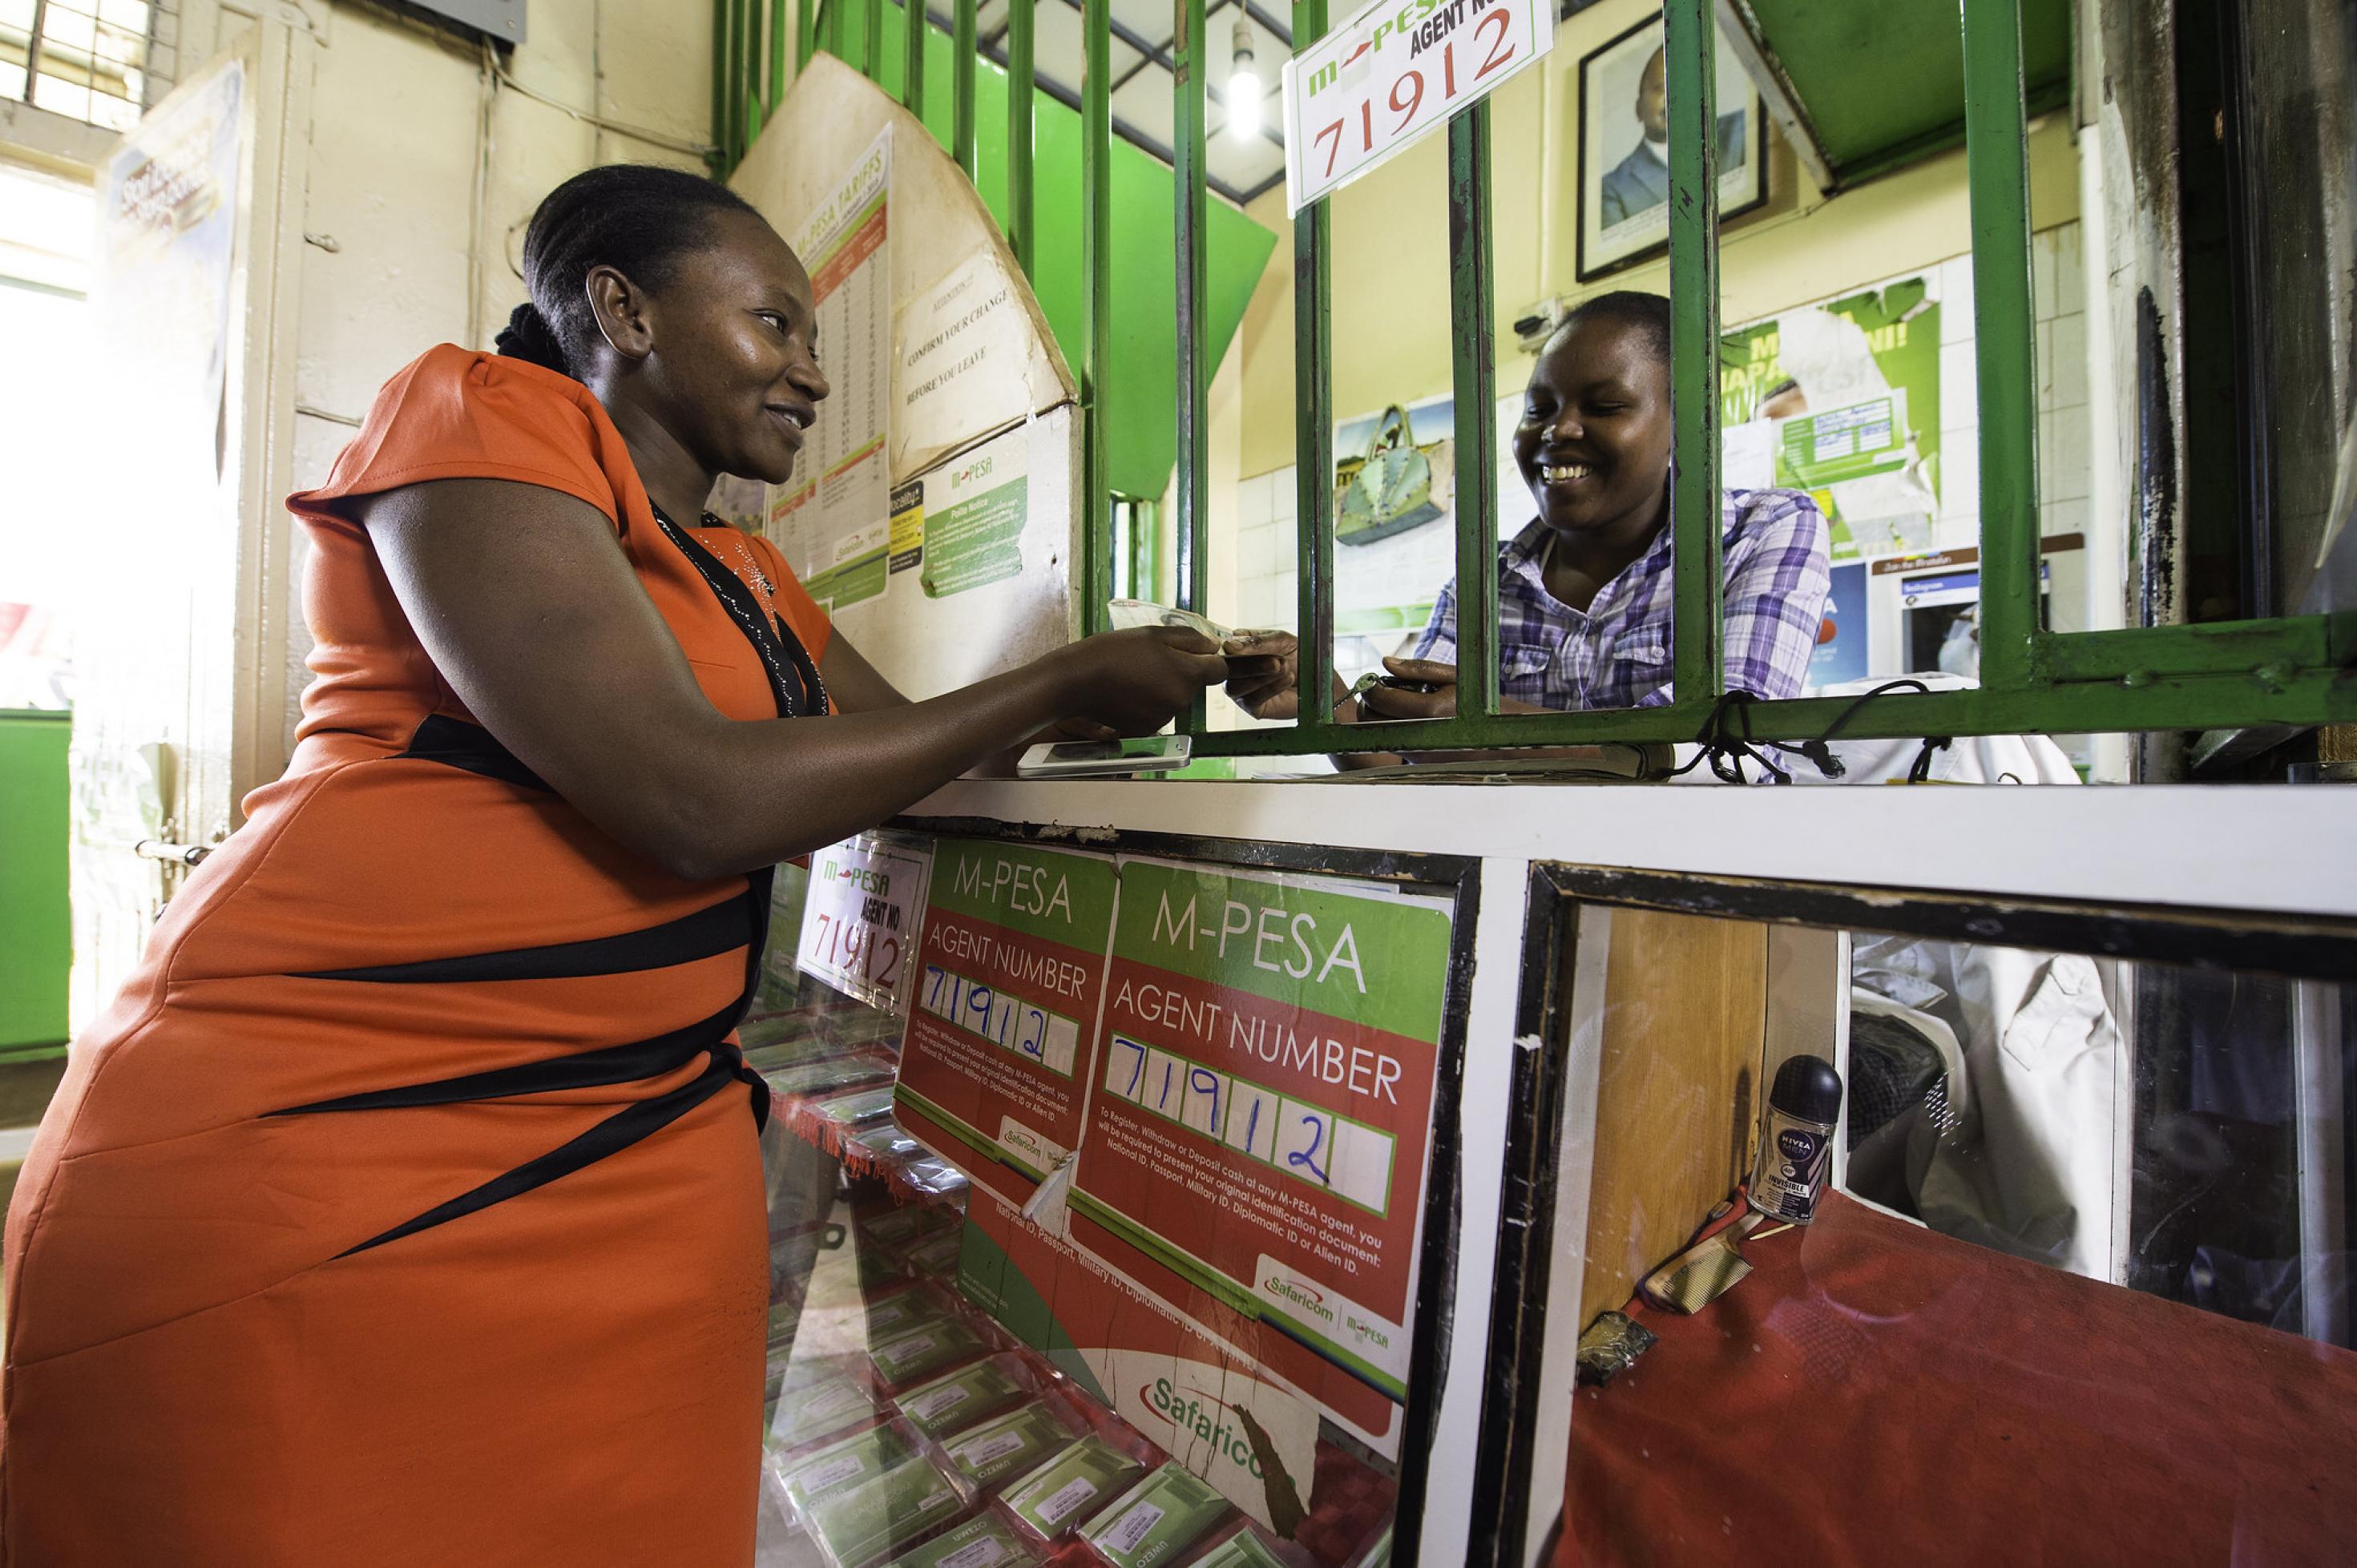 M-Pesa-Schalter von Safaricom in Nairobi.